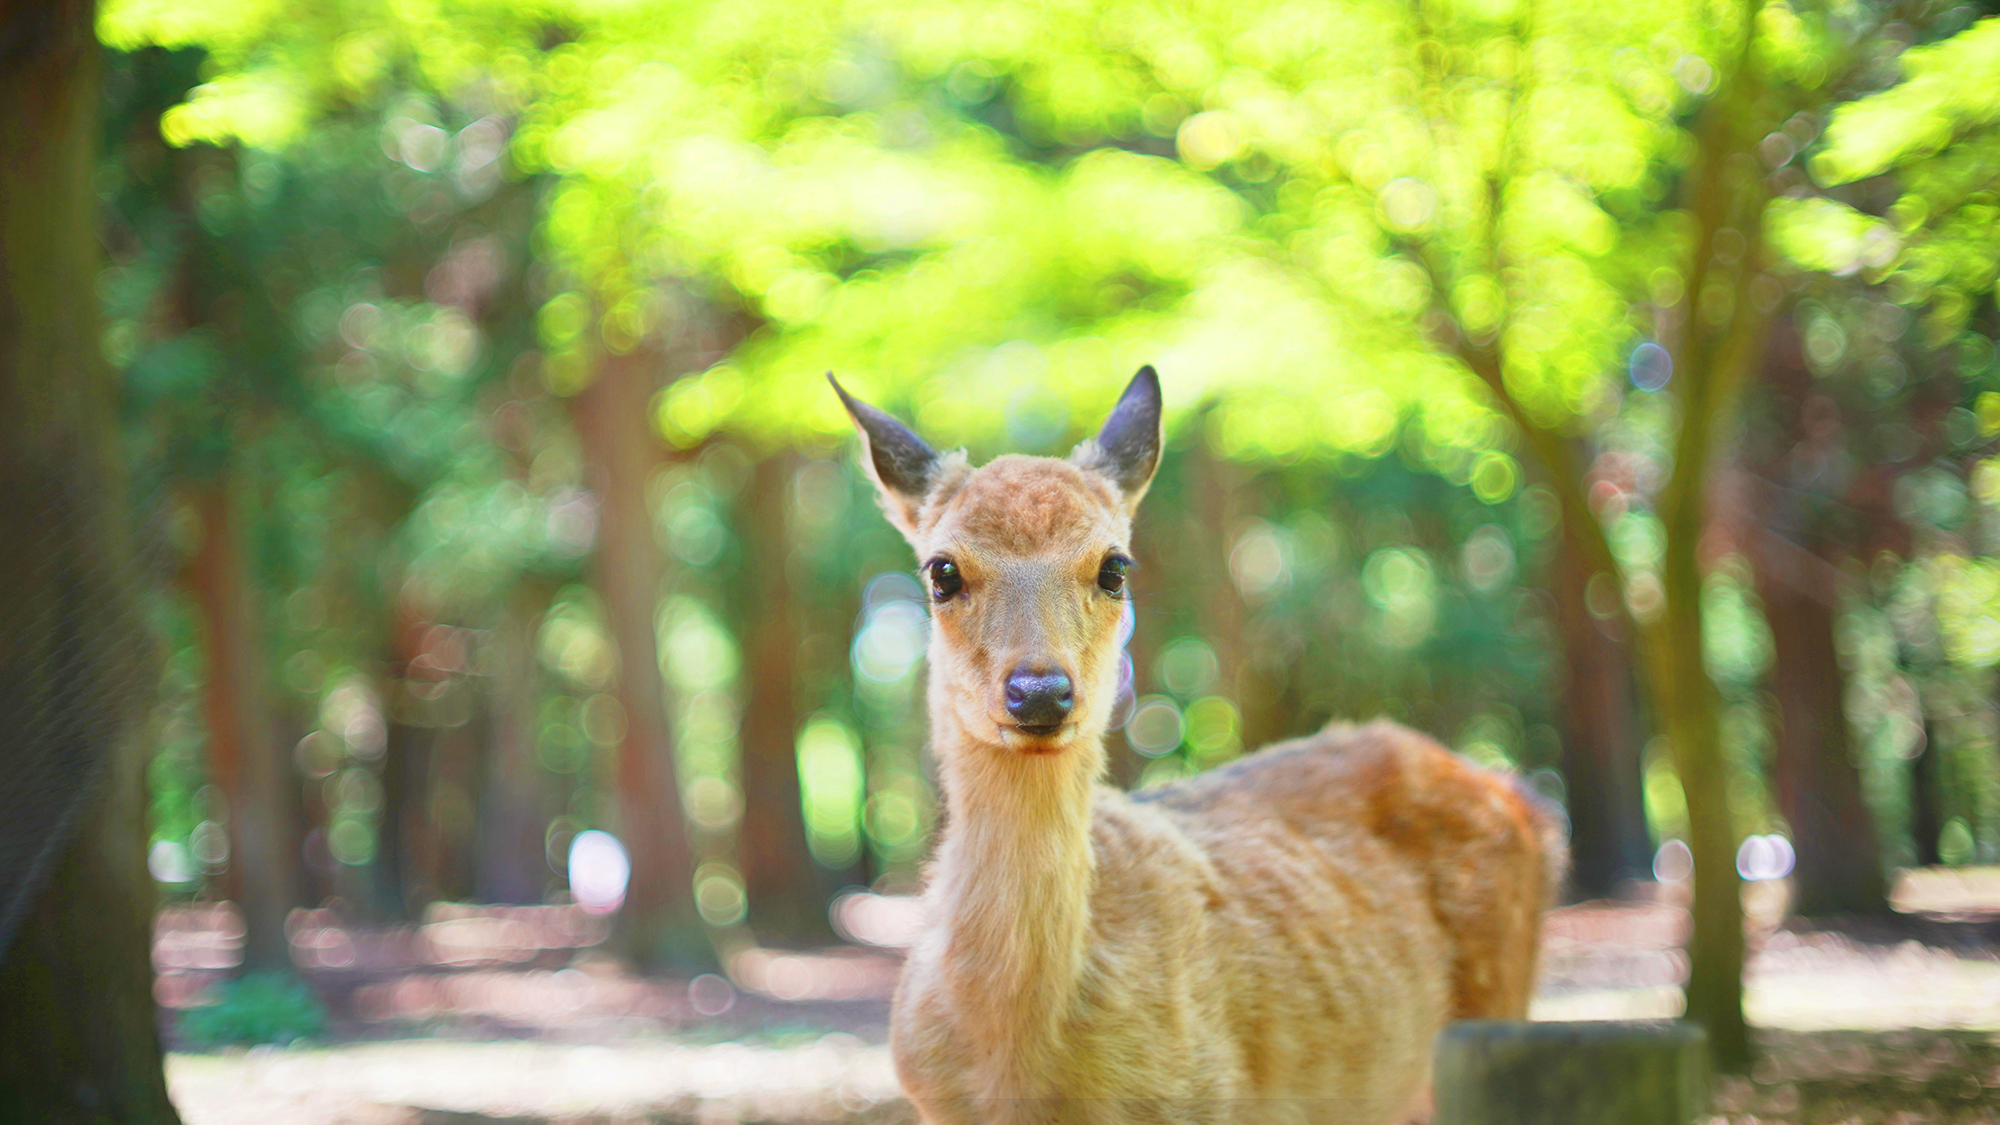 【奈良公園】奈良観光に便利な立地です。※イメージ